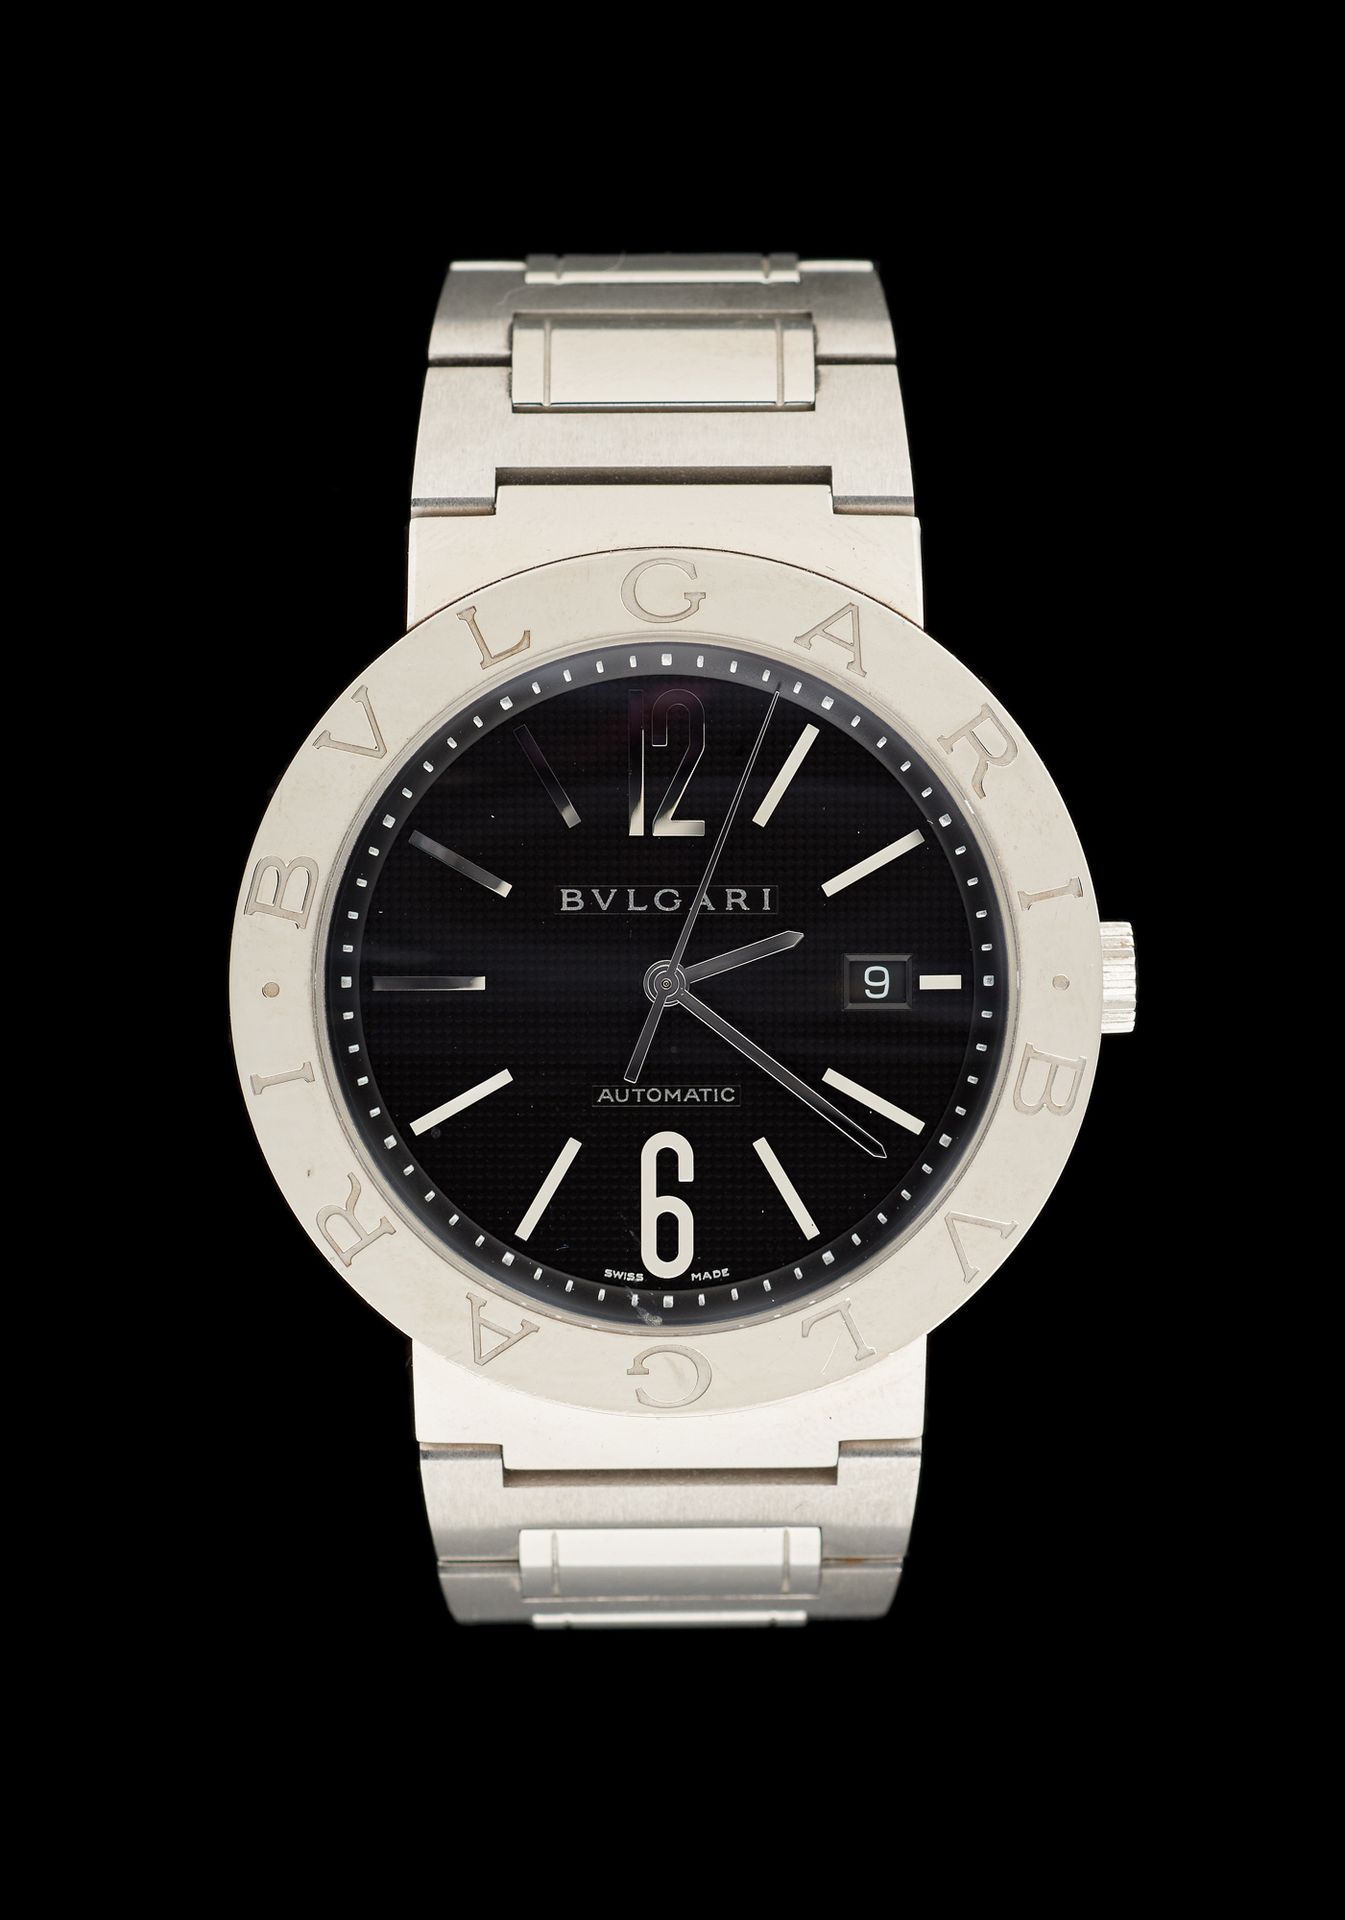 Bulgari. 手表：钢制腕表，自动机芯，带日期窗口。

宝格丽品牌，型号为 "BB42SS"。

文件和原箱都已附在后面。